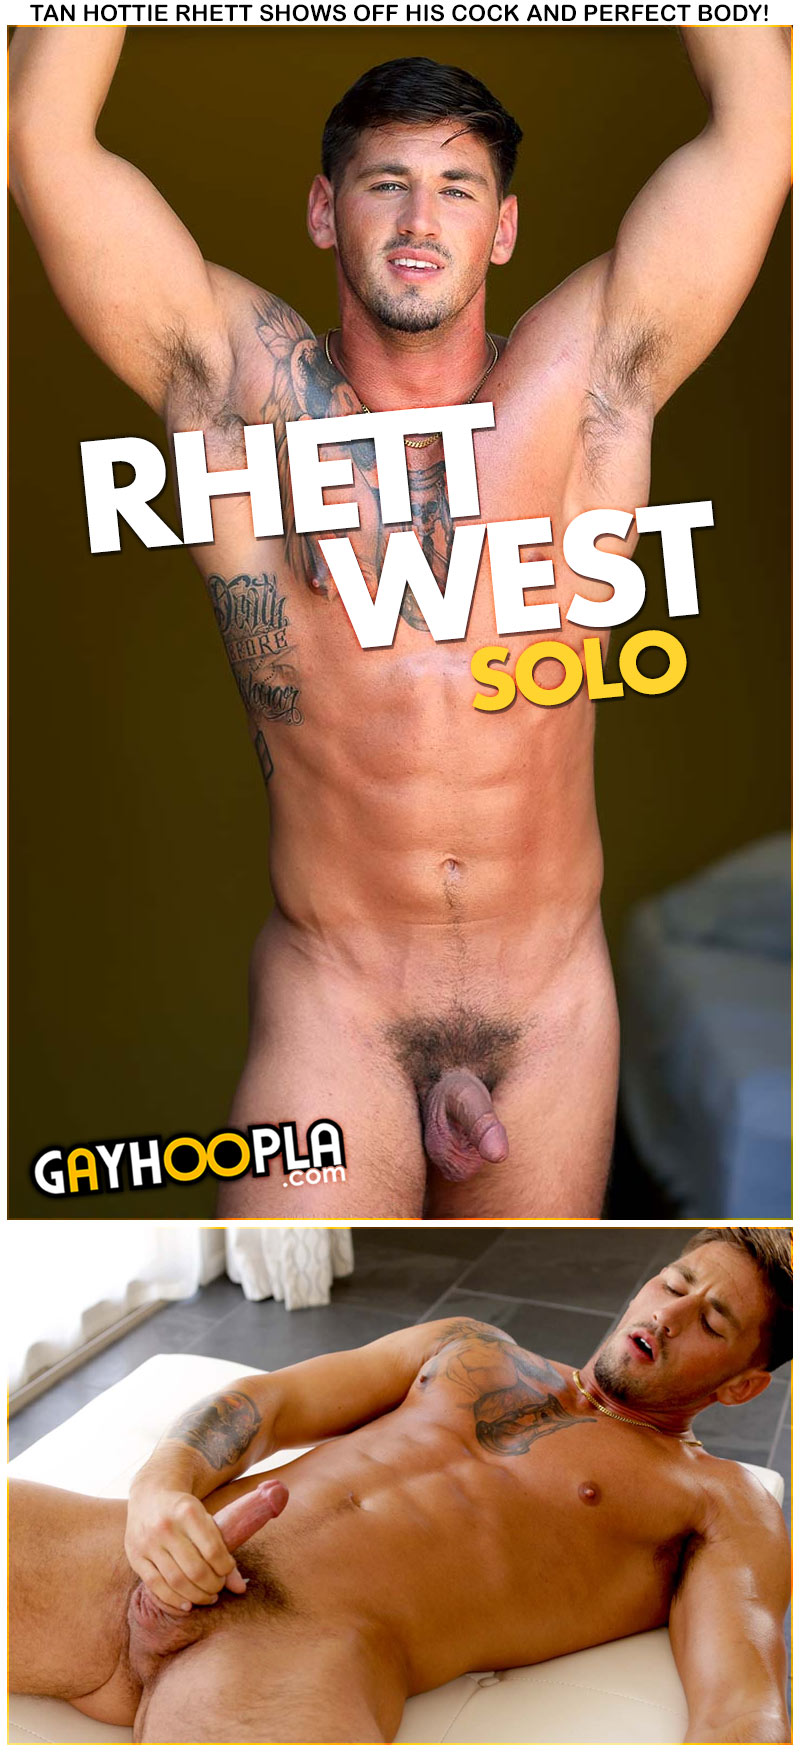 Rhett West Solo at GayHoopla